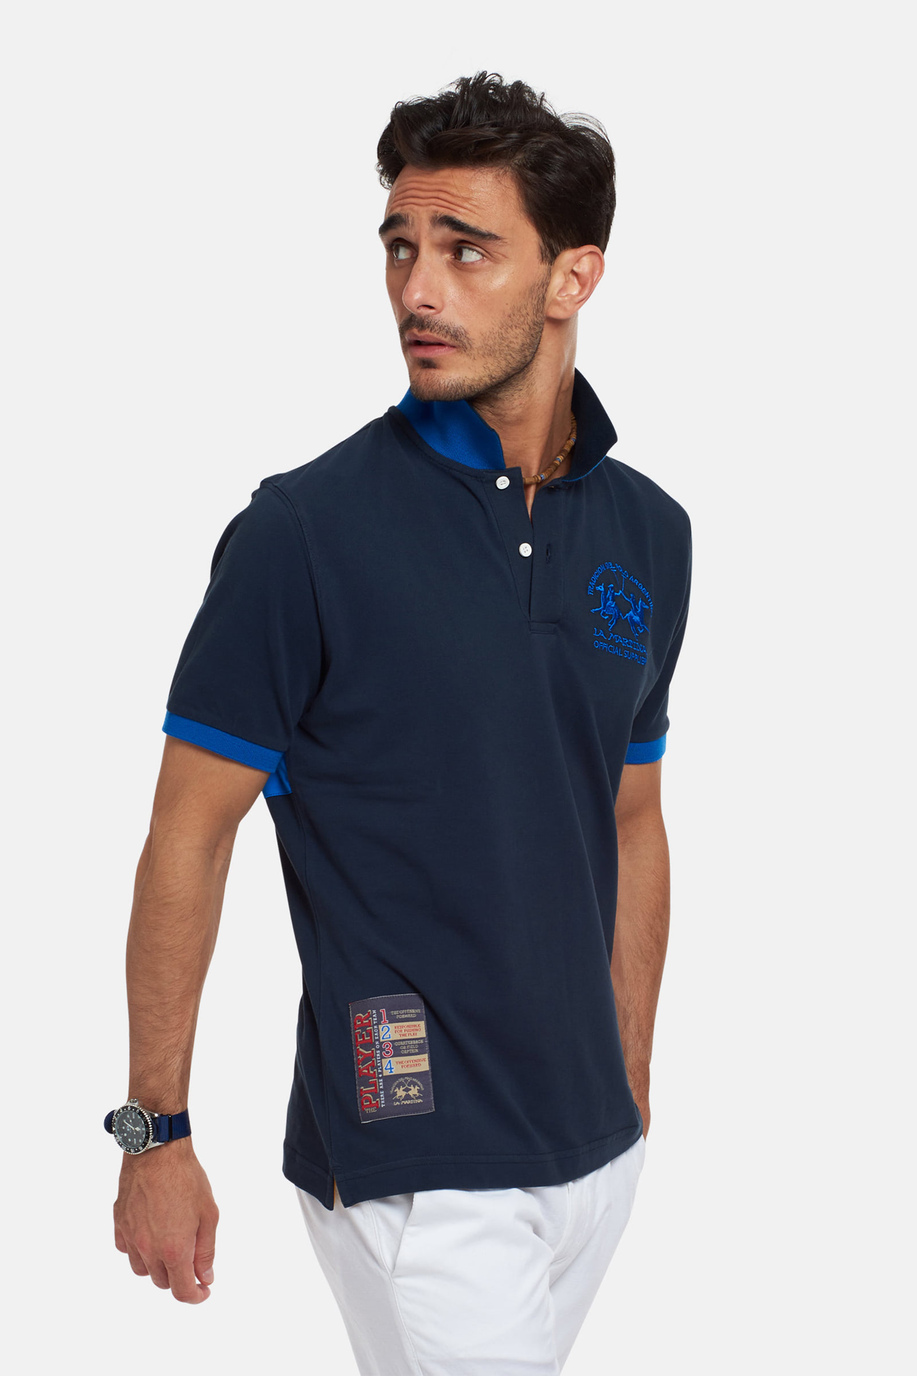 Men's short-sleeved, regular fit polo shirt